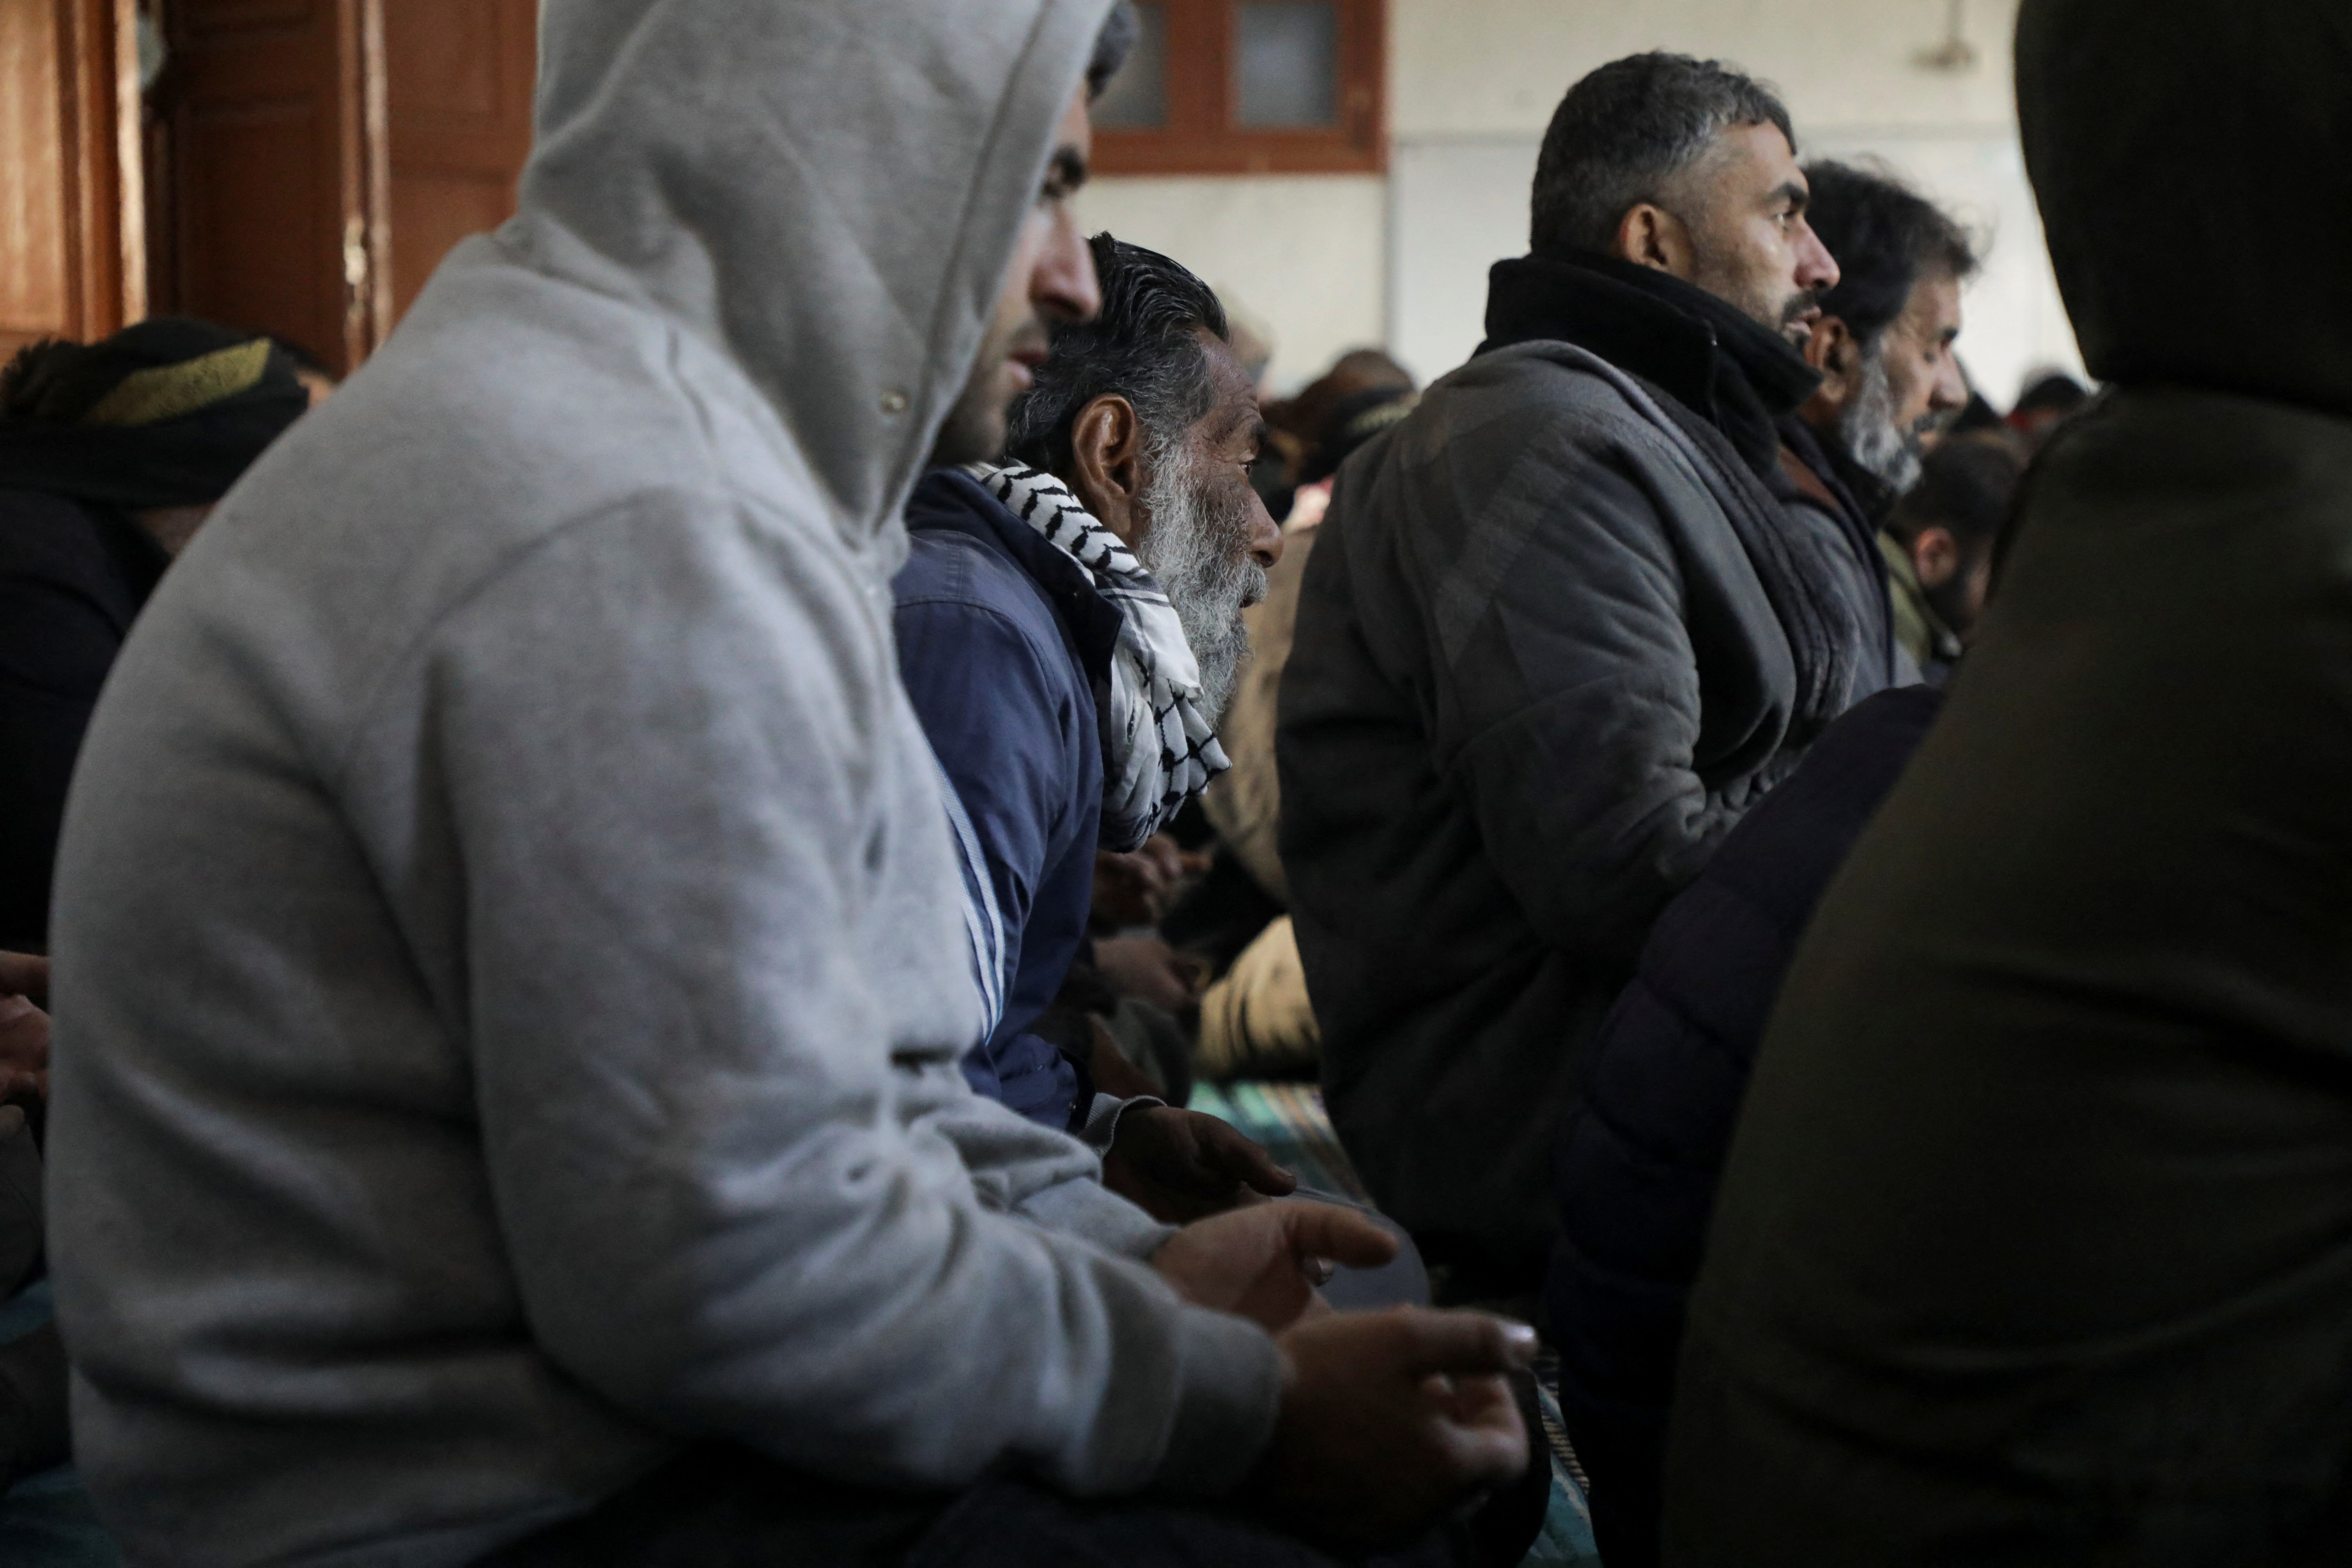 People pray inside a mosque in rebel-held town of Jandaris